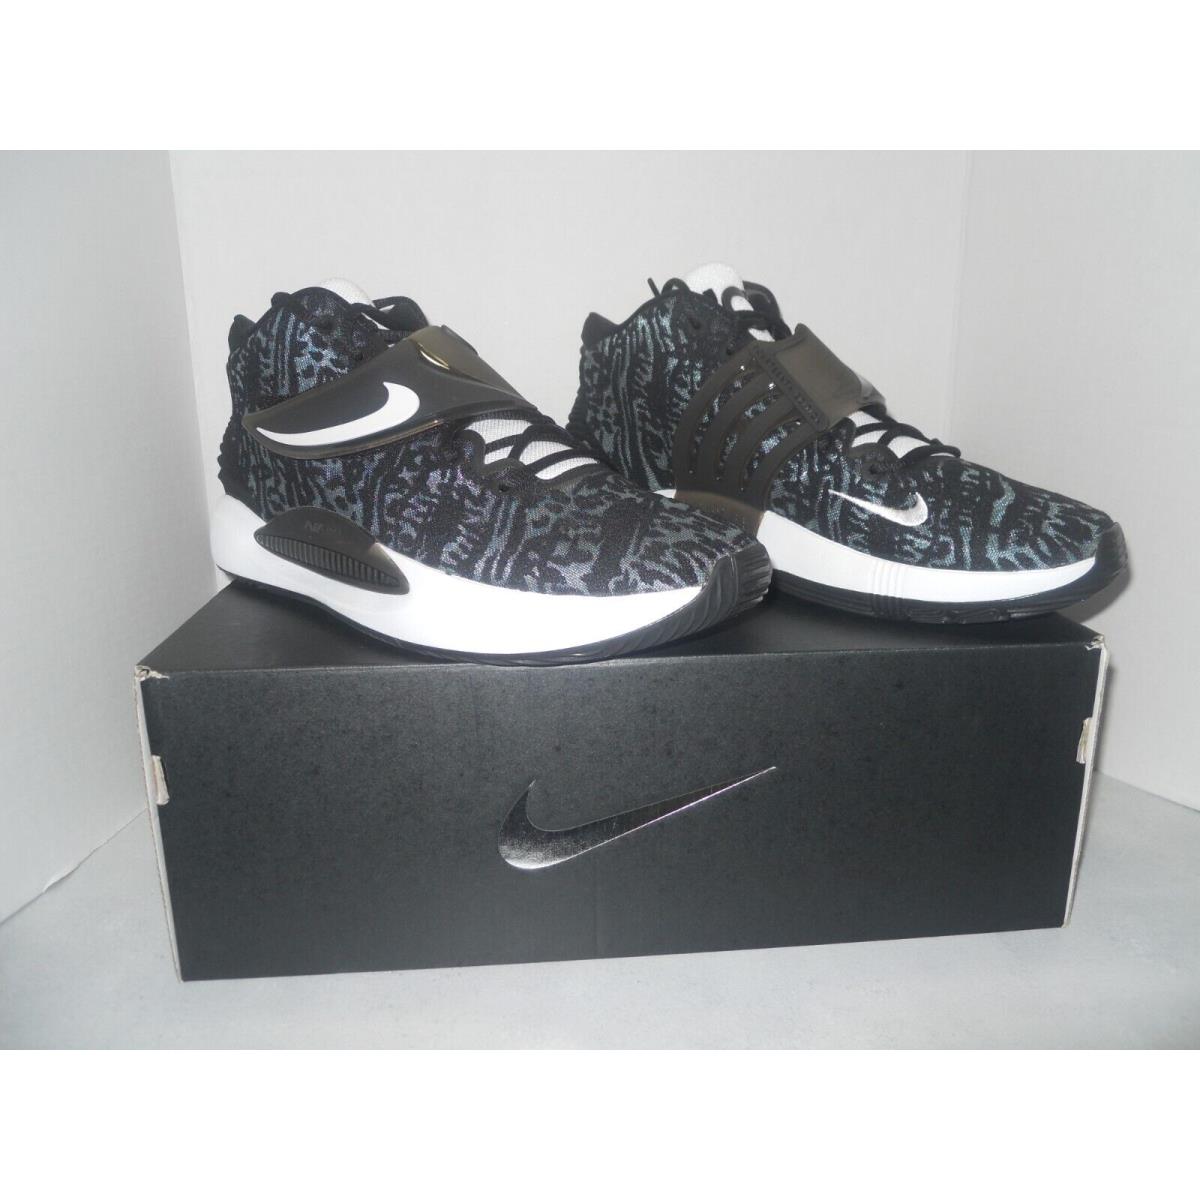 Nike shoes PROMO - Black 1